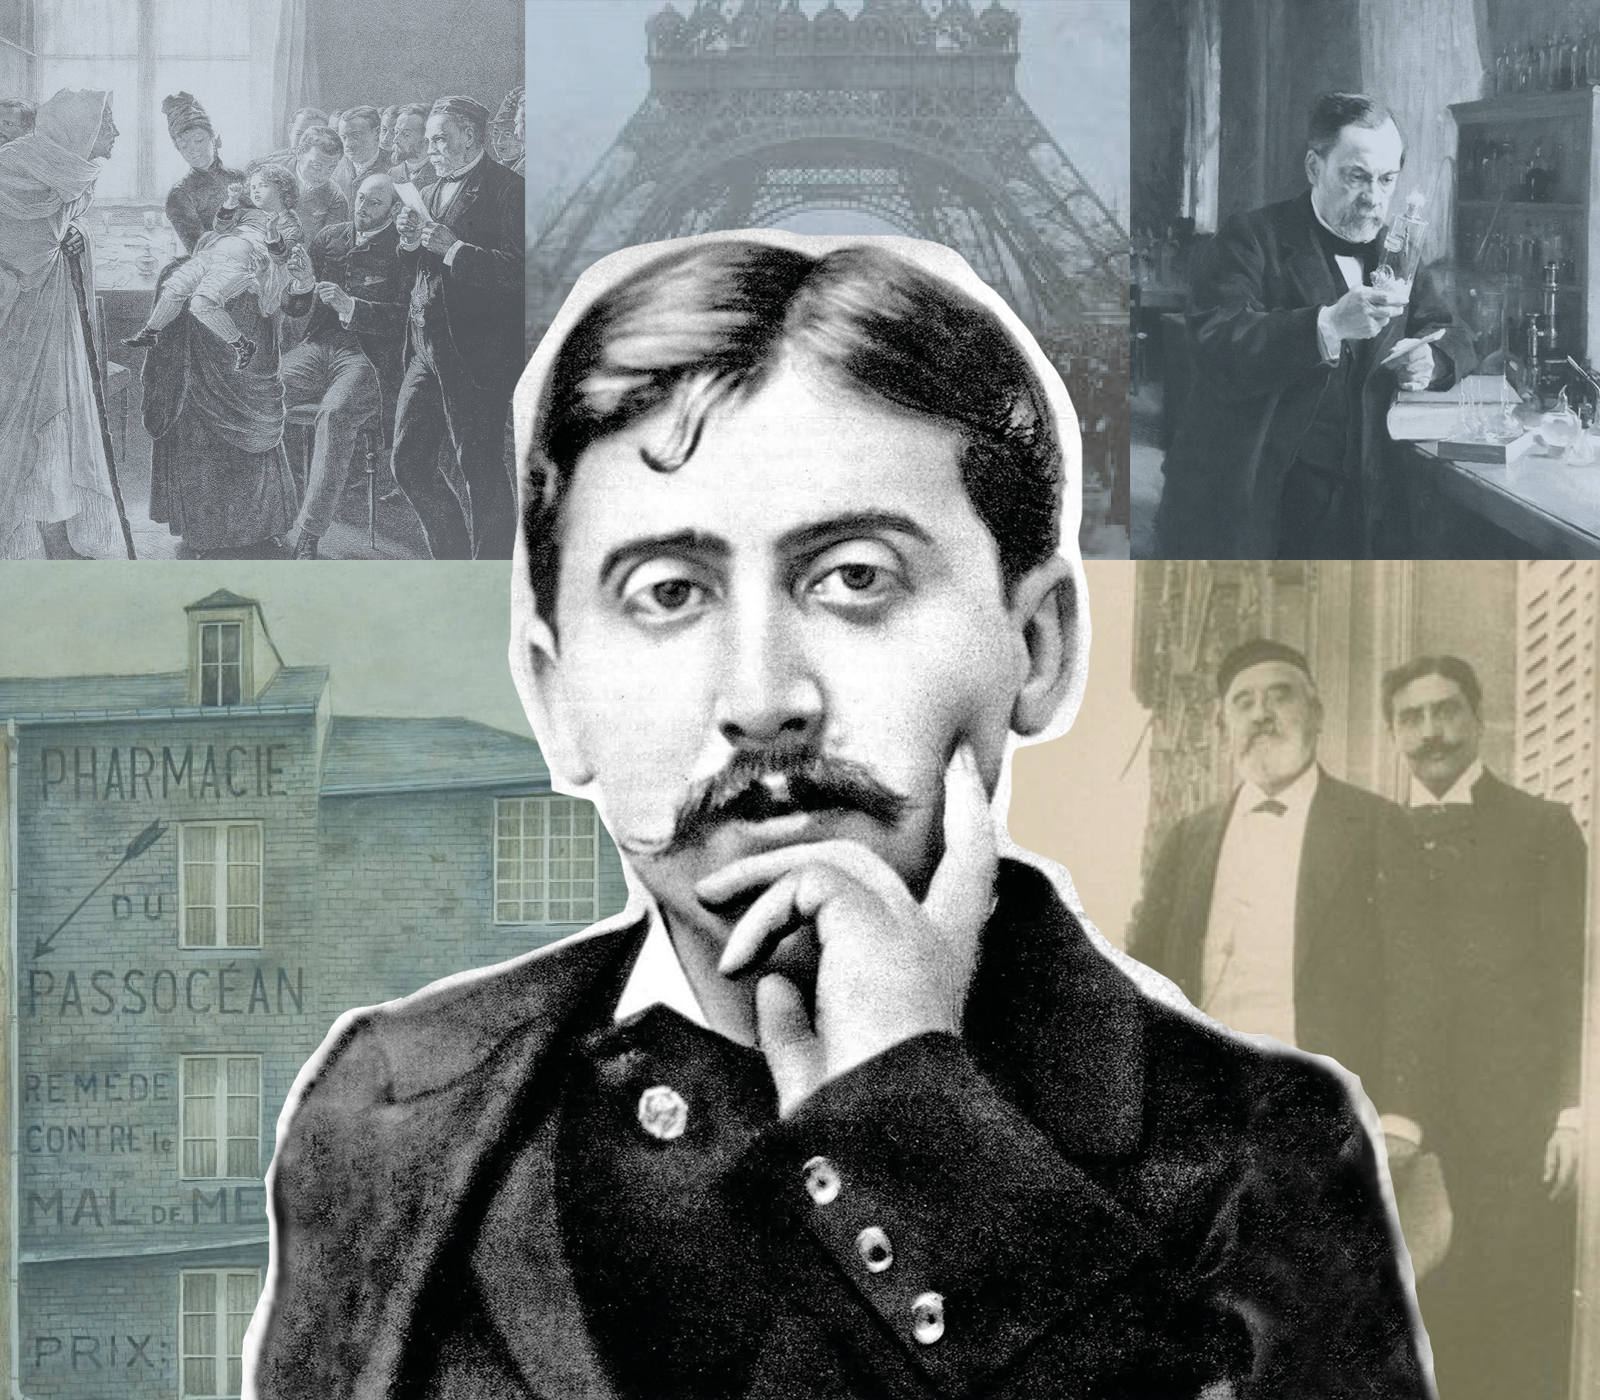 Marcel Proust Exhibition